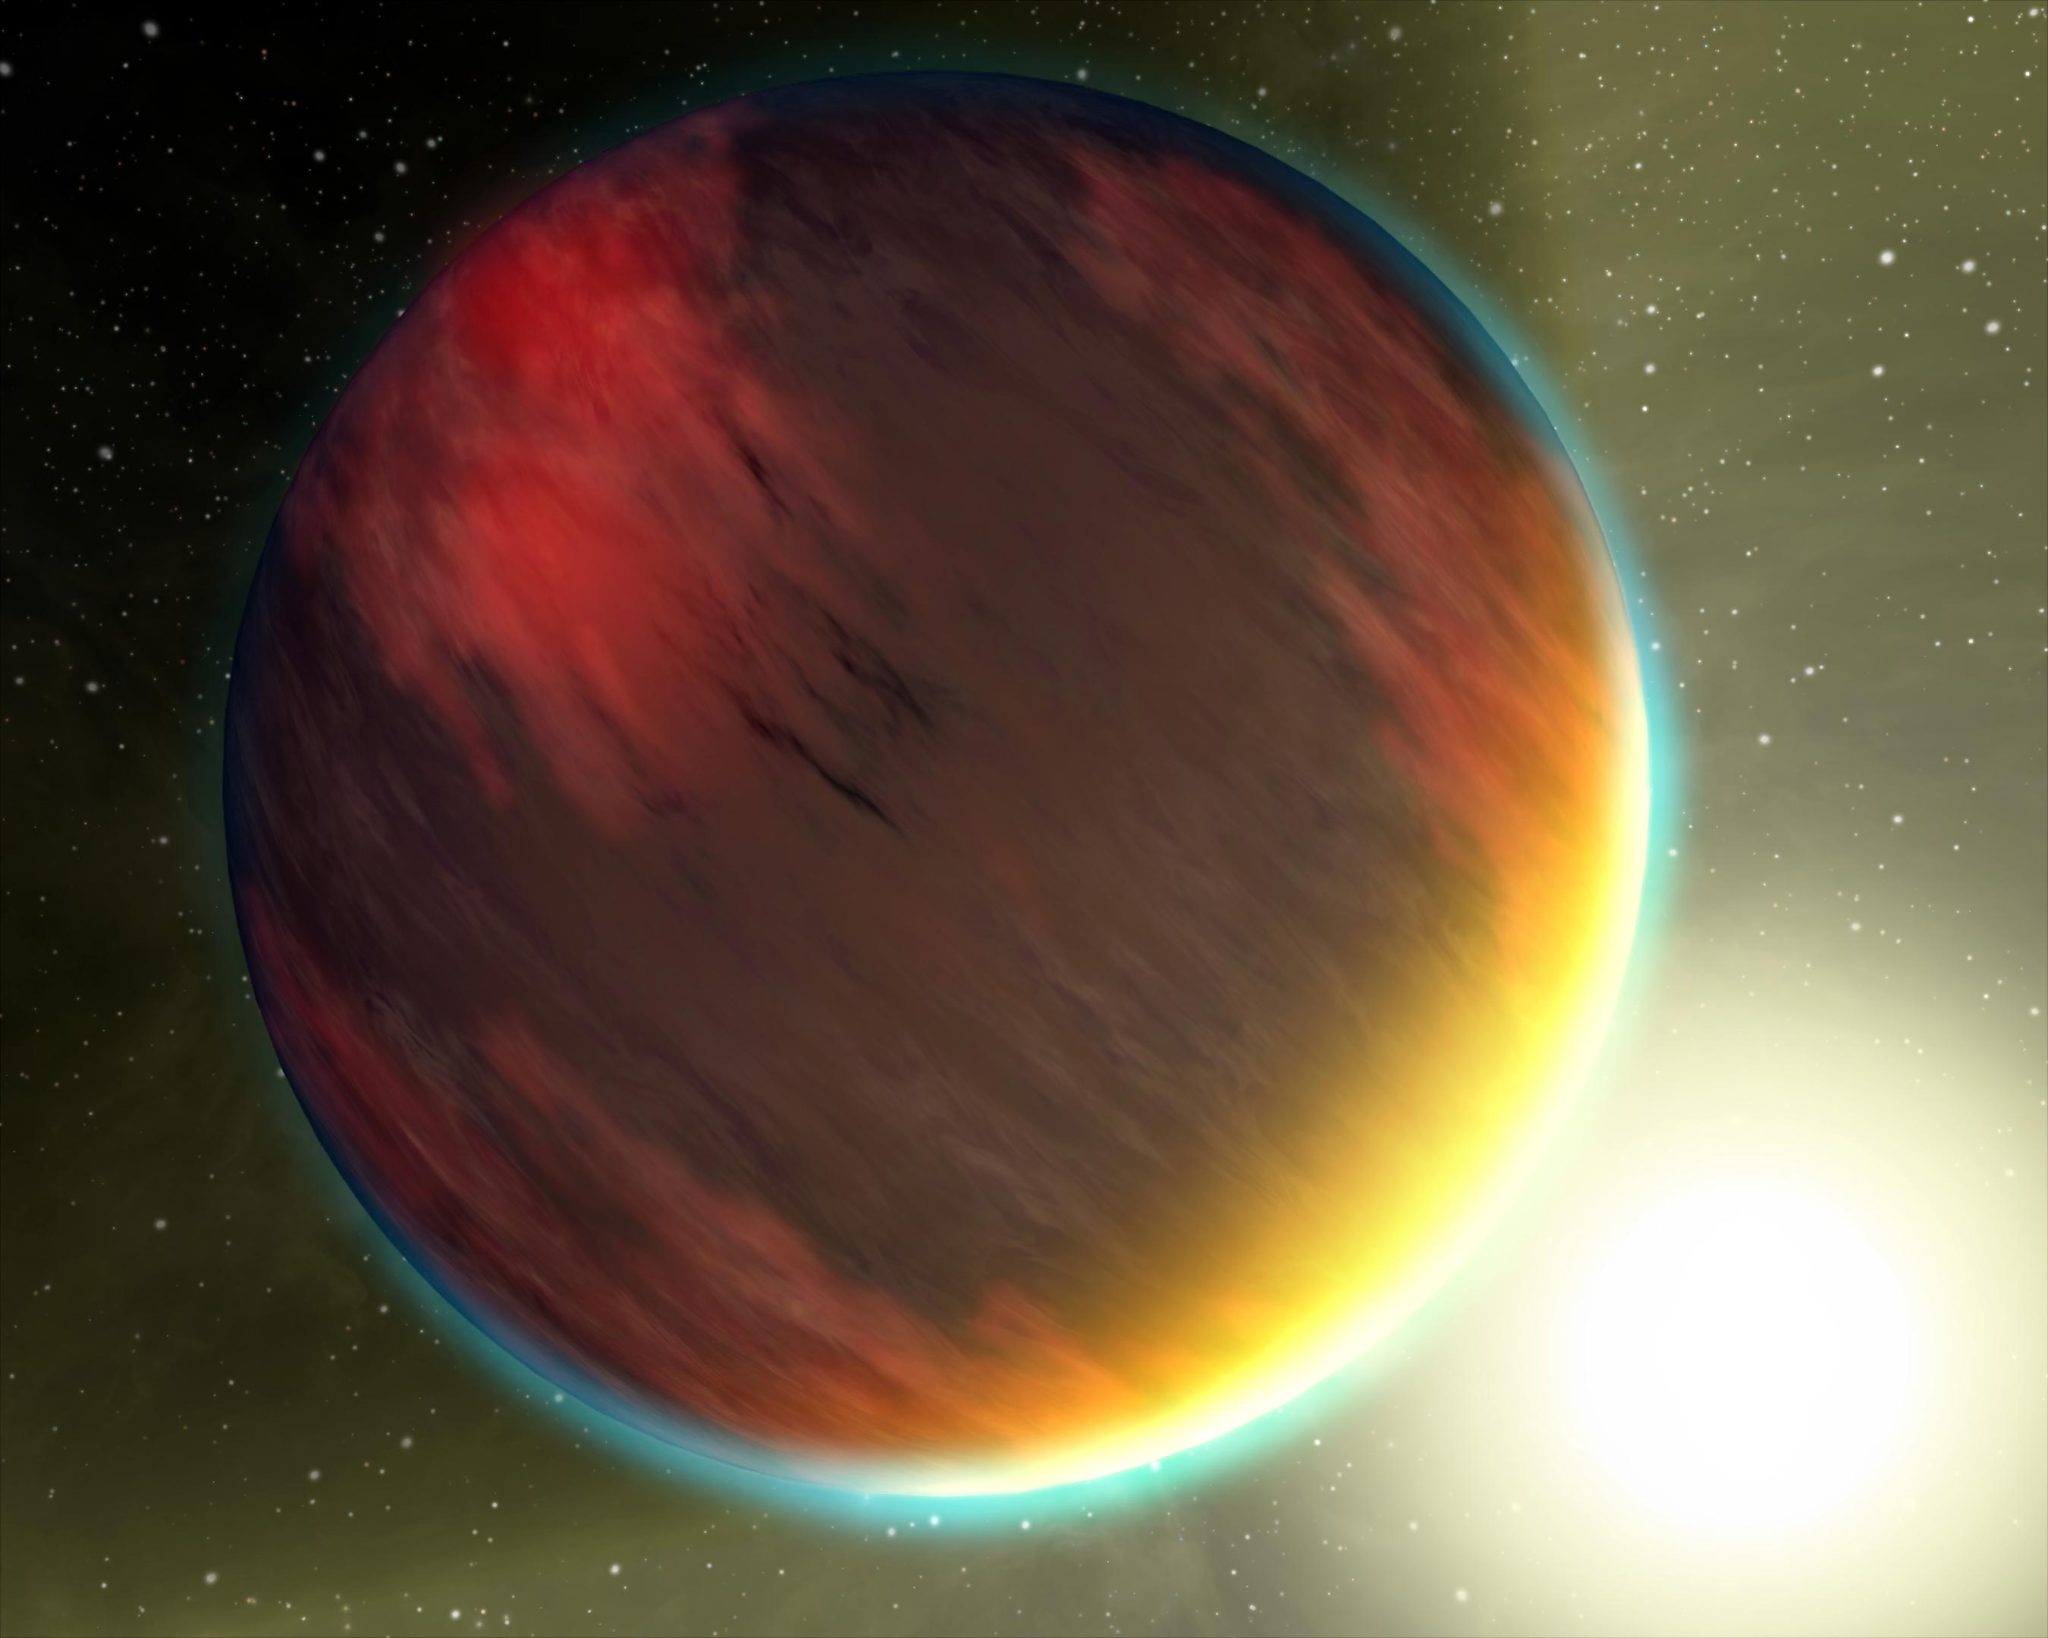 天文学家对被称为热木星的系外行星的化学和物理构成有了深入了解